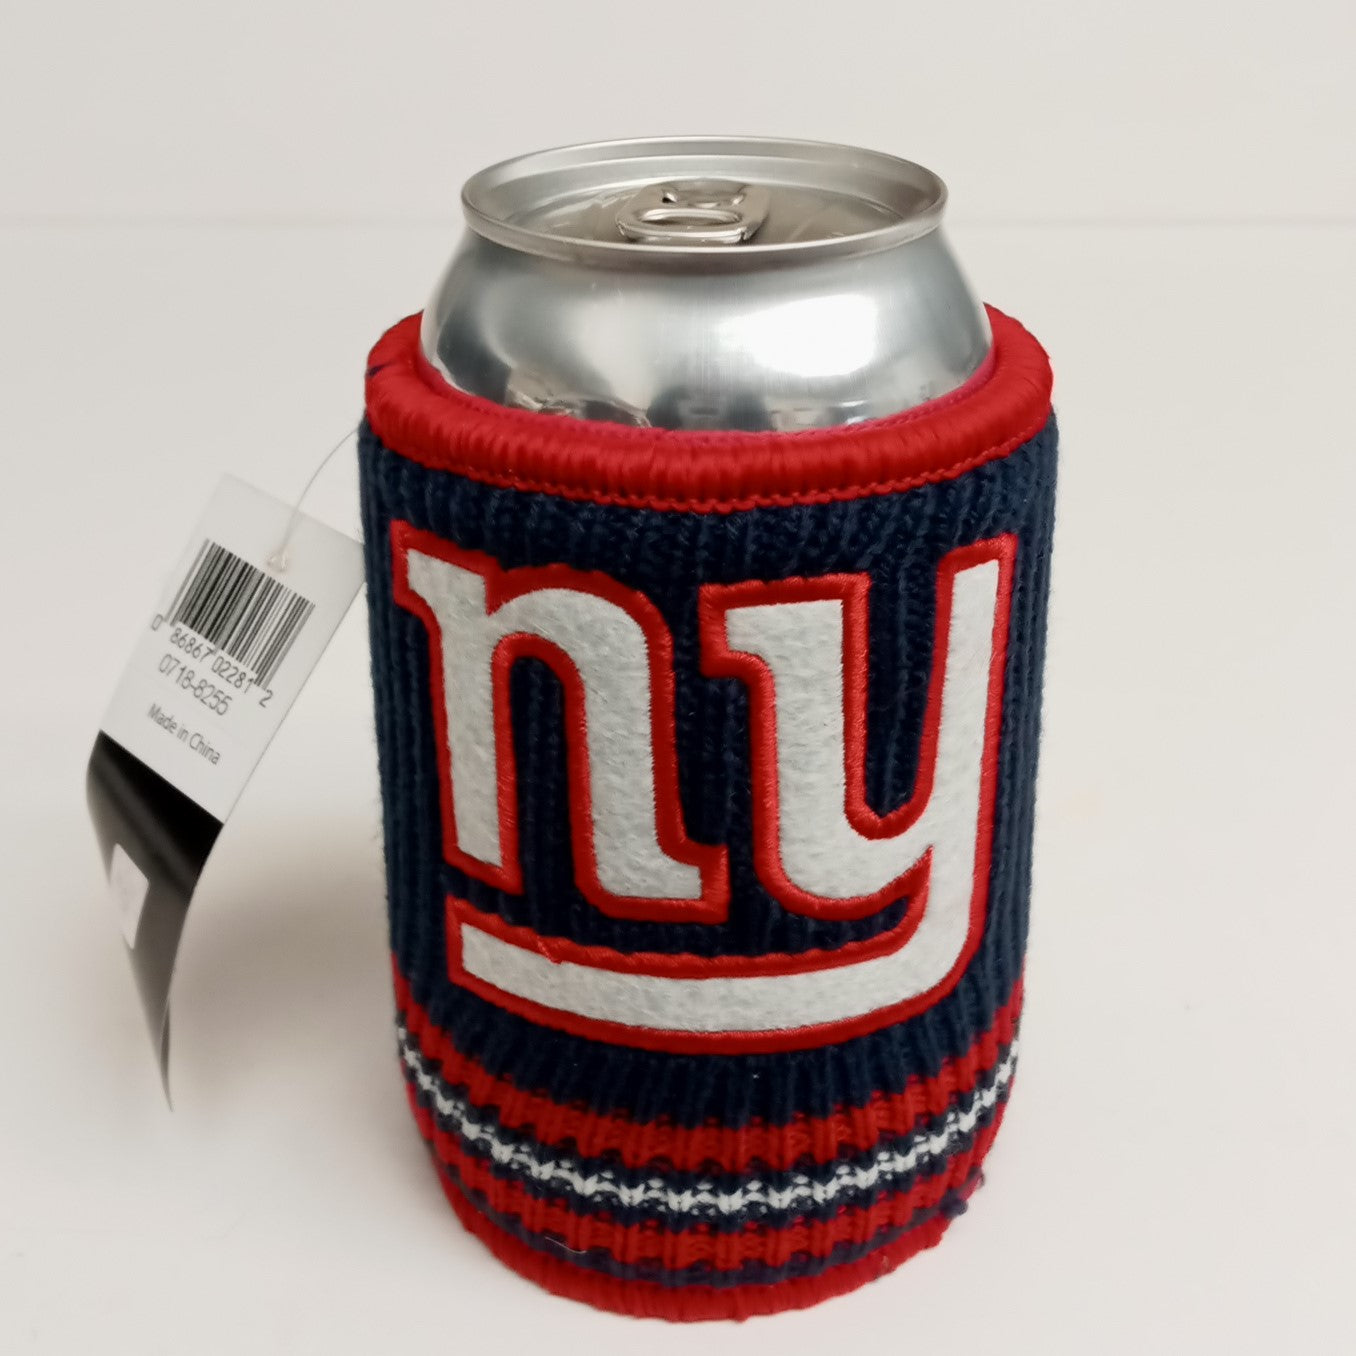 Kolder Woolie Beverage Koozie Insulator NFL Football Teams Logos